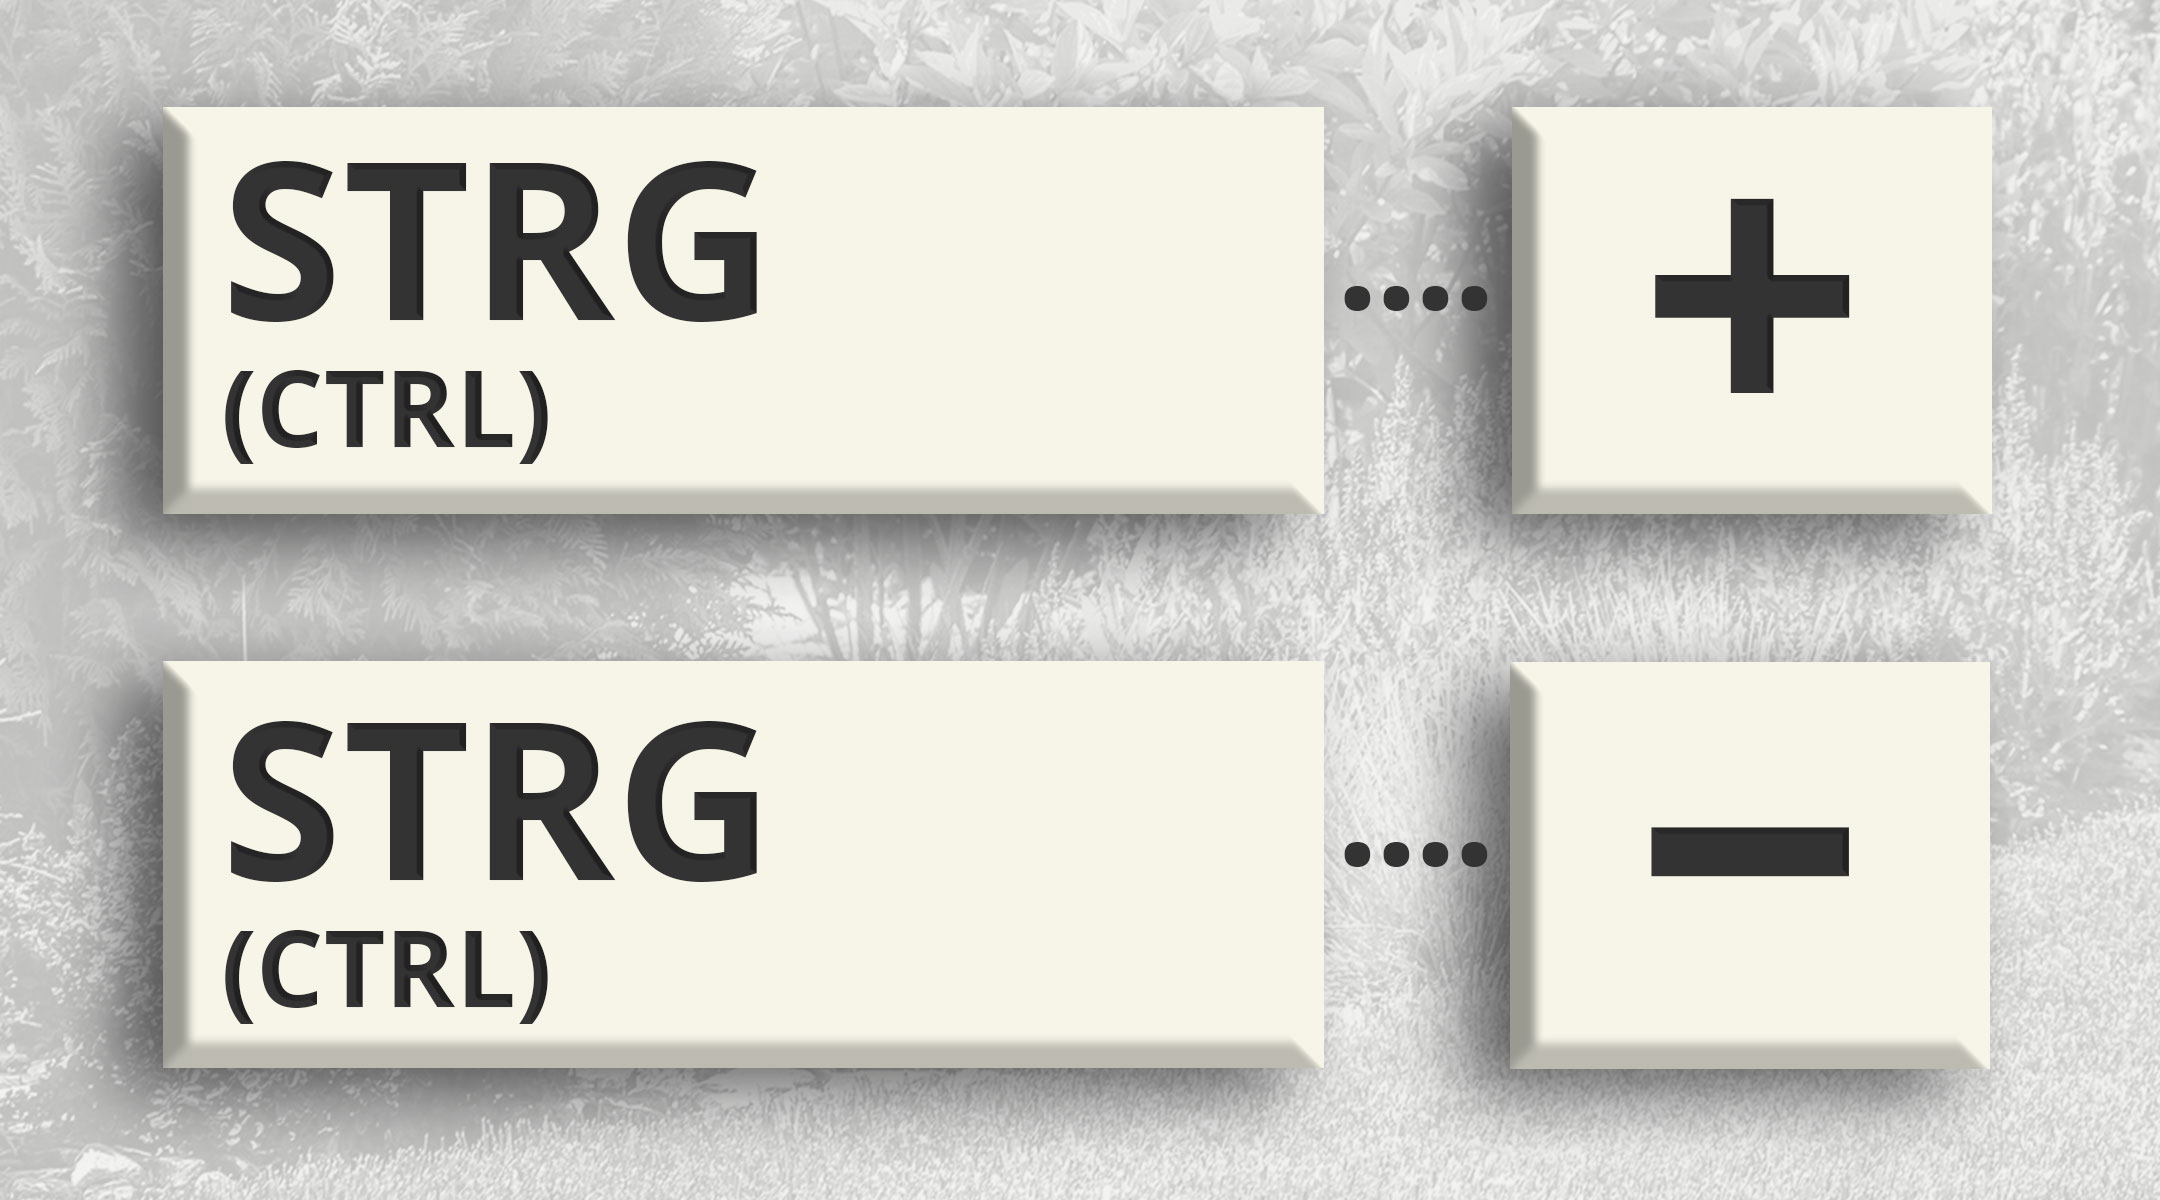 Computertaste STRG und Plus-Zeichen für Vergrößern, Taste STRG und Minus-Zeichen für Verkleinern der Seitendarstellung